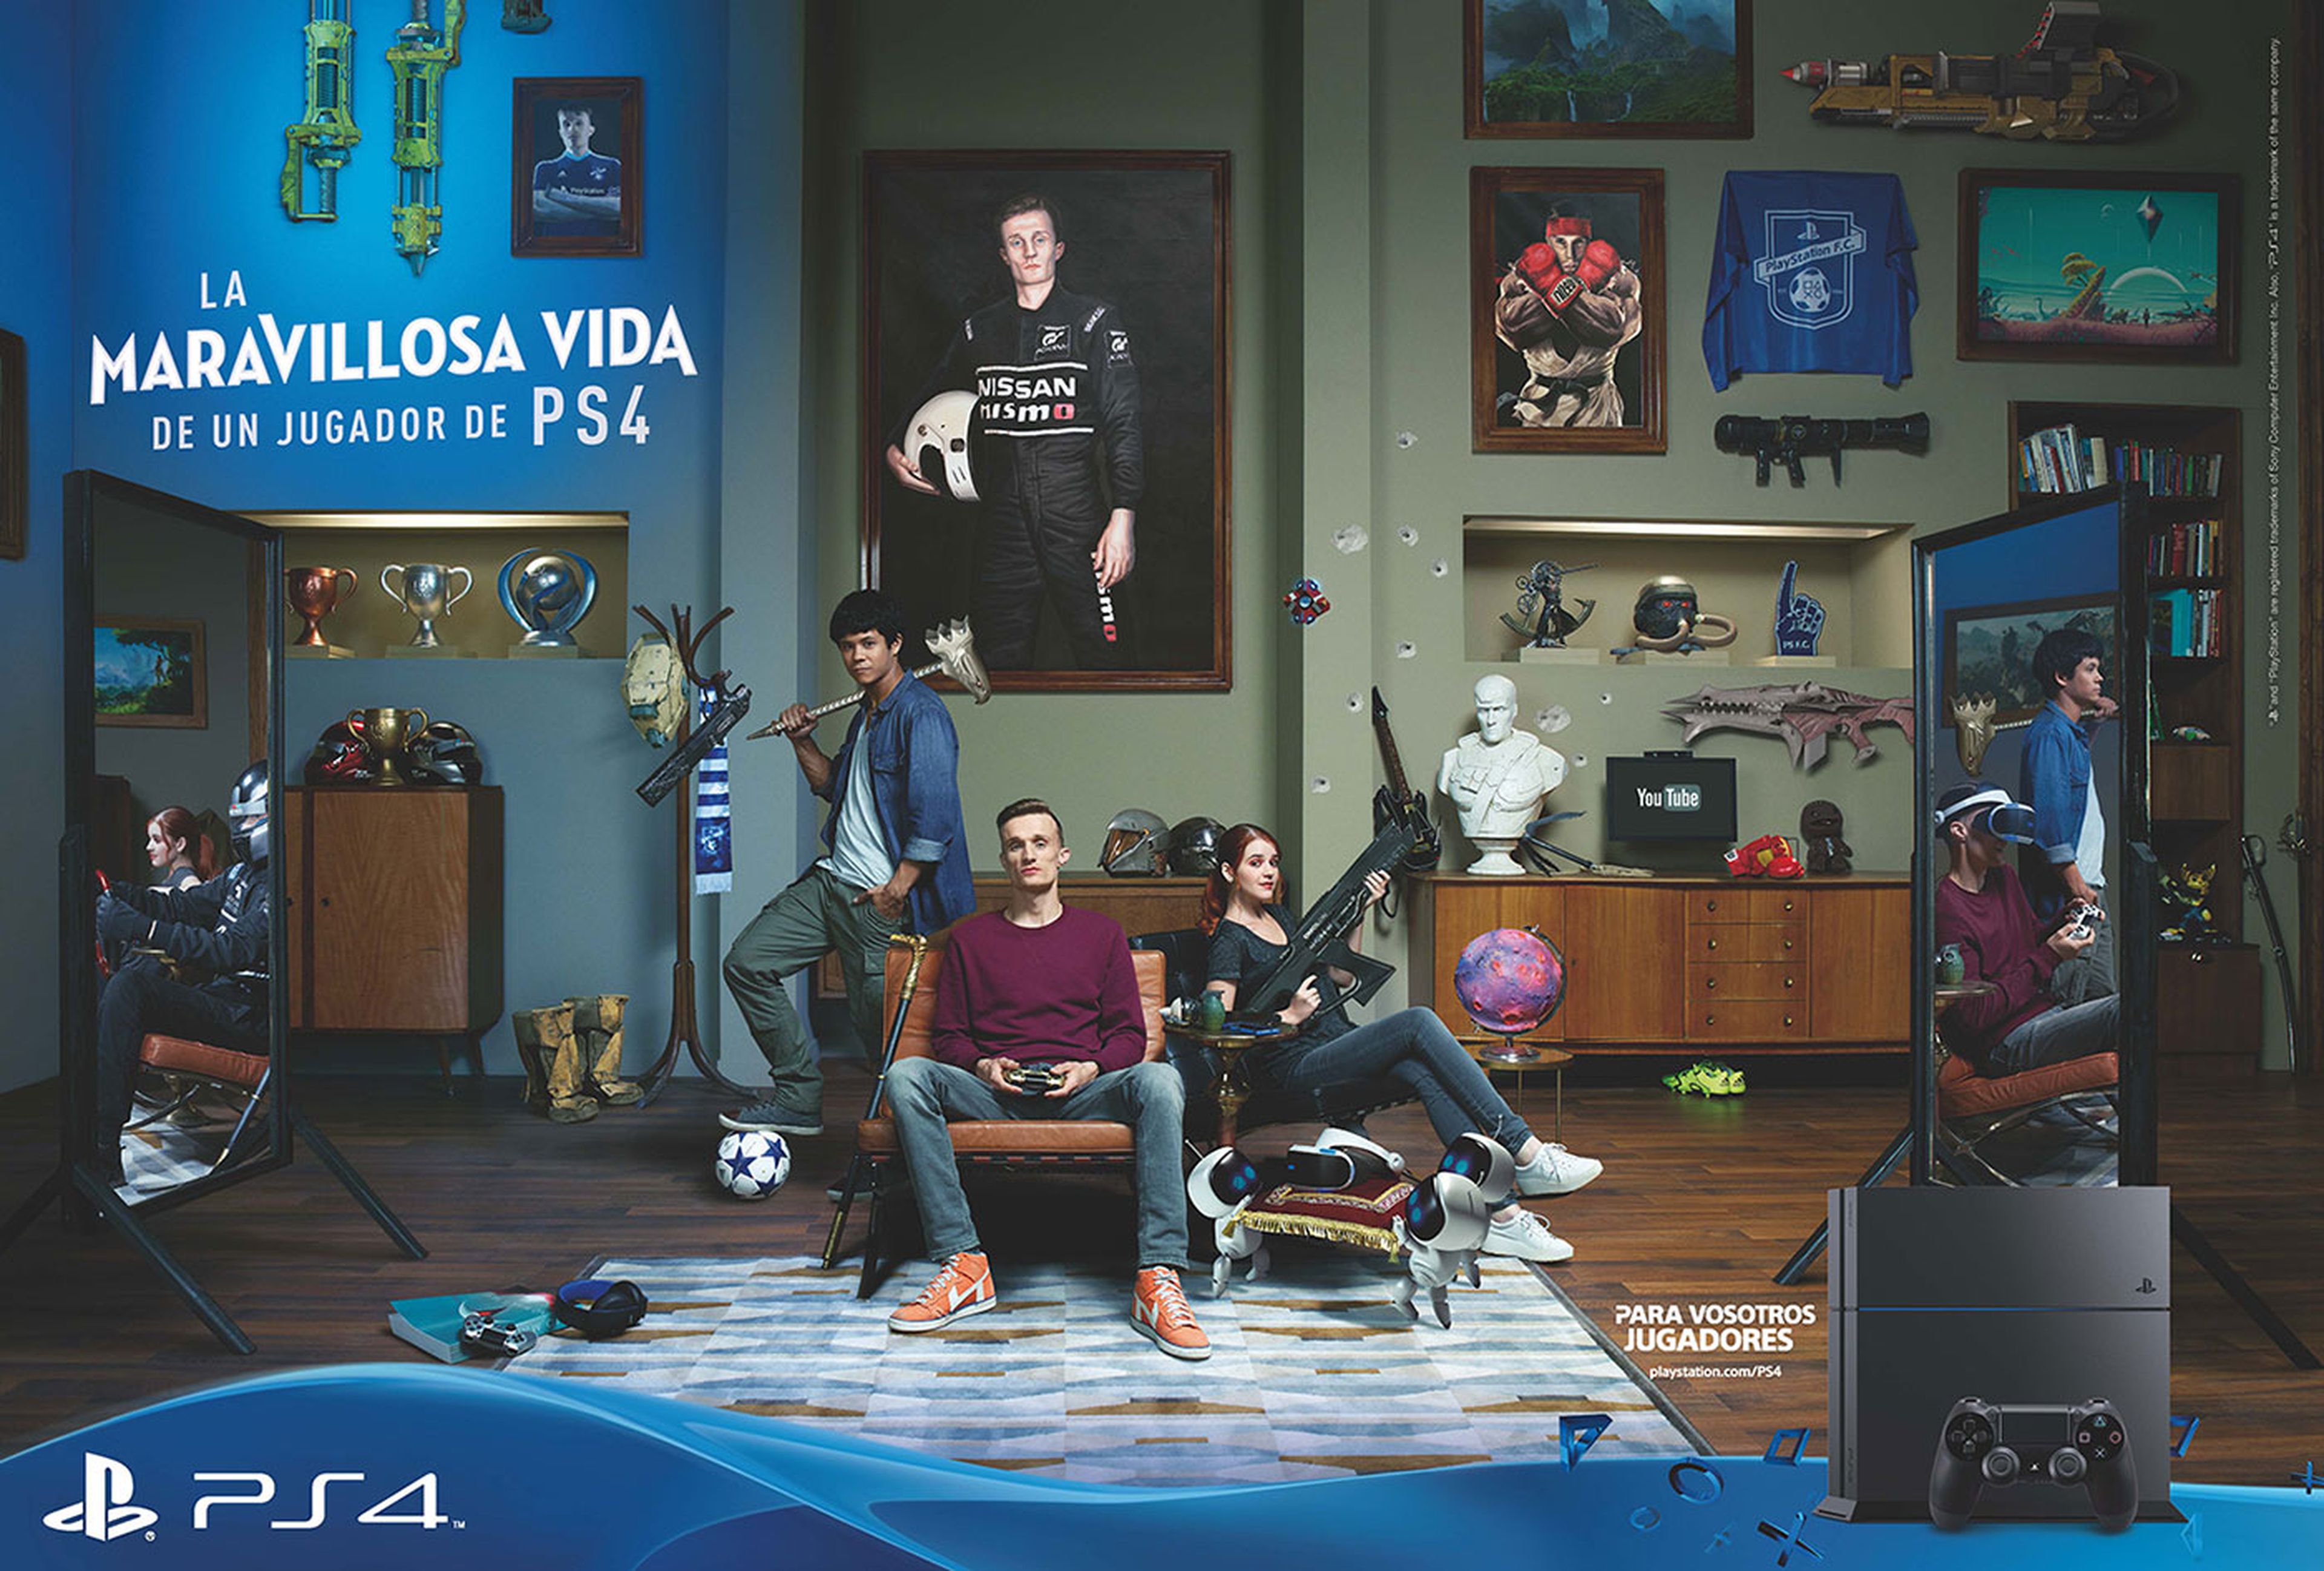 La nueva campaña promocional de PlayStation rinde homenaje a las funciones y videojuegos de PS4.